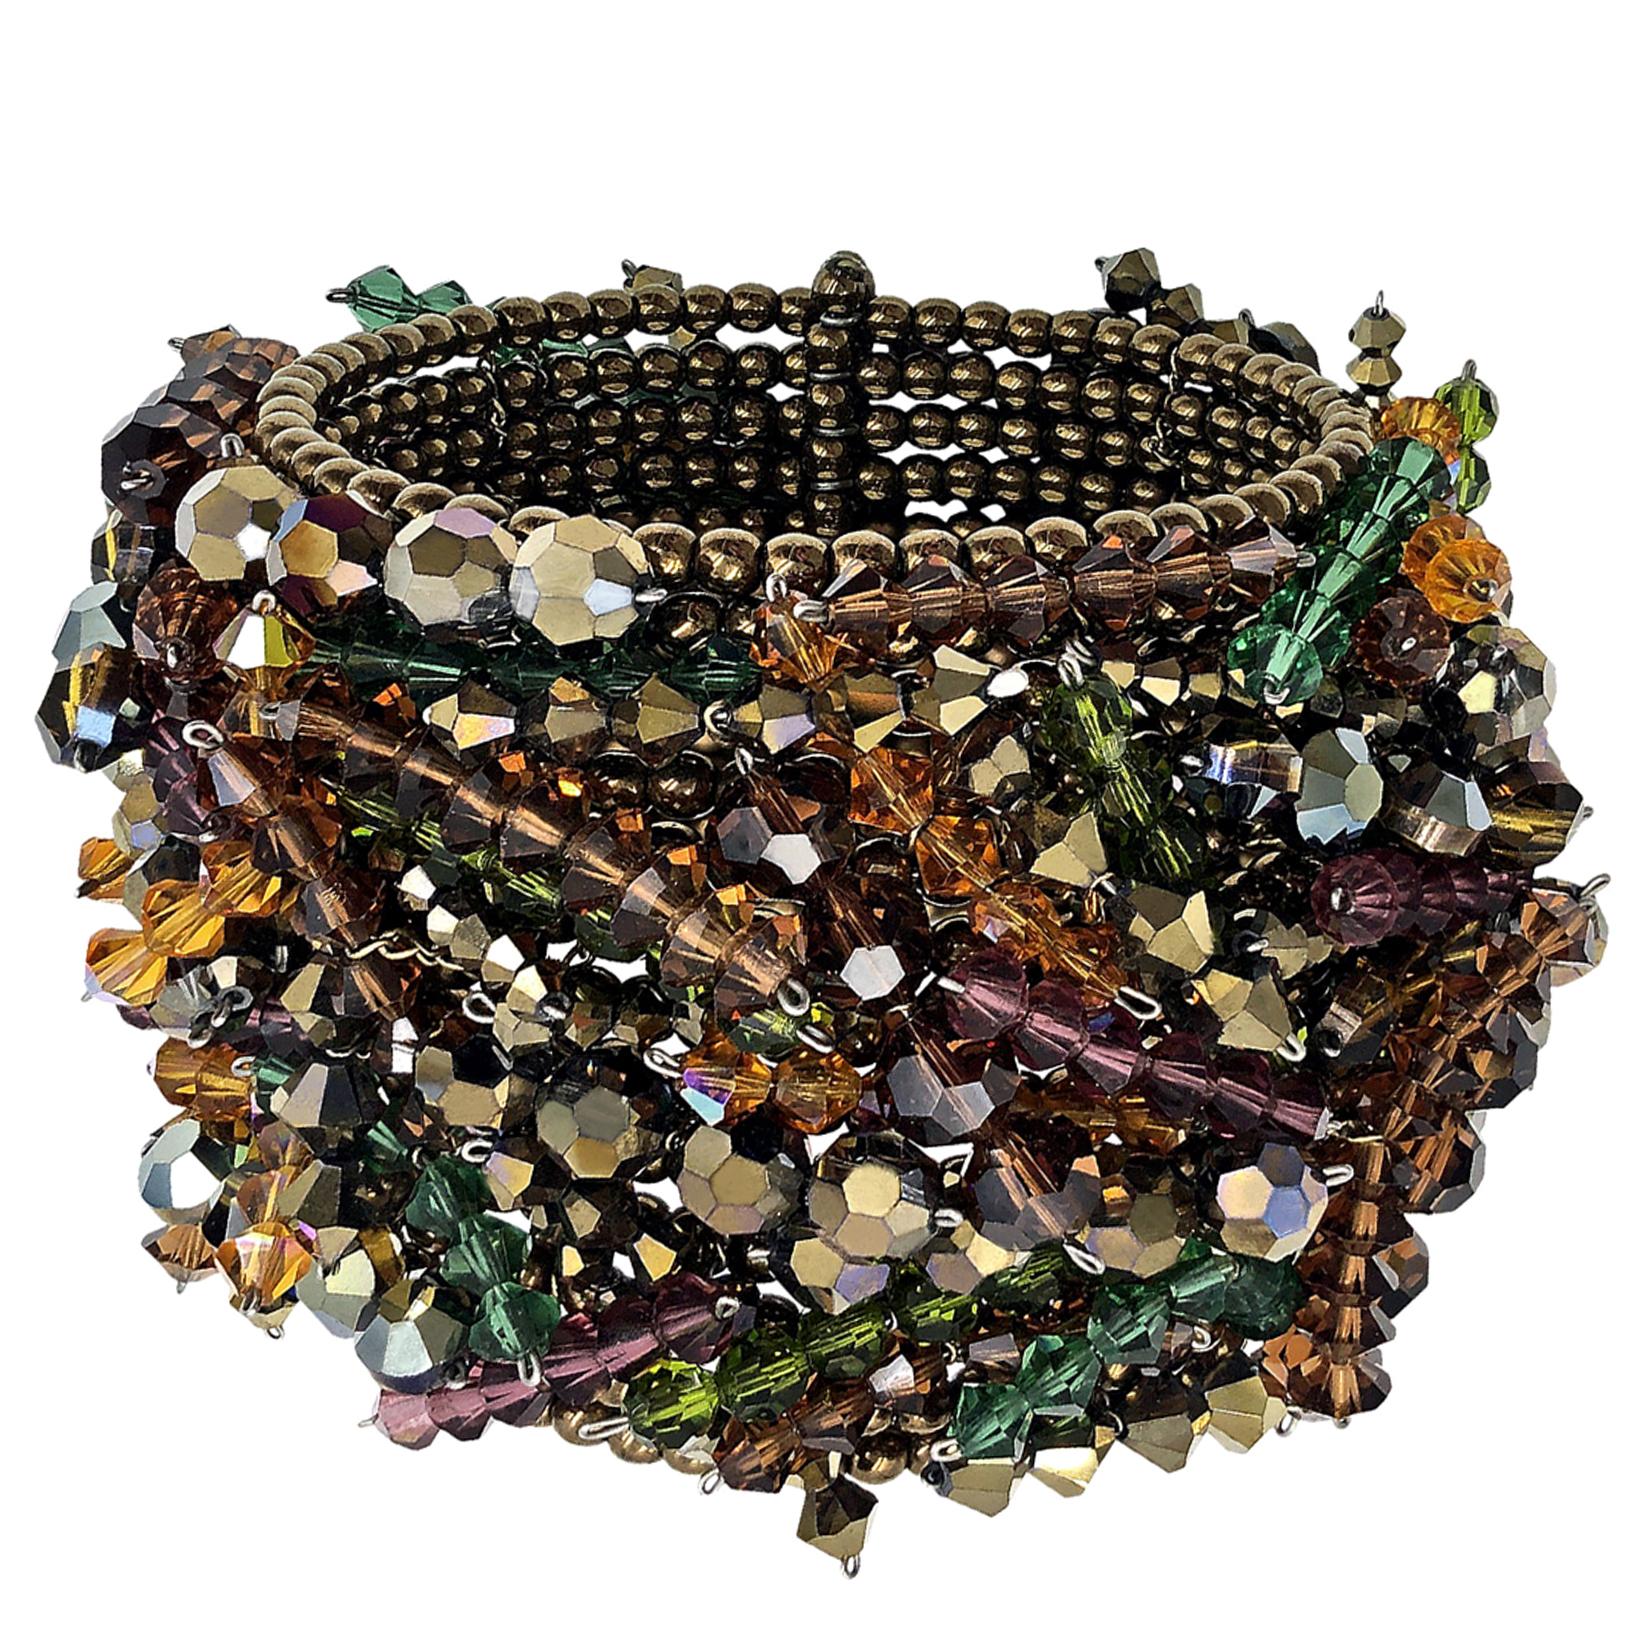 Estyn Hulbert Swarovski Kristall Einzigartiges Chaos Manschettenknopf Armband